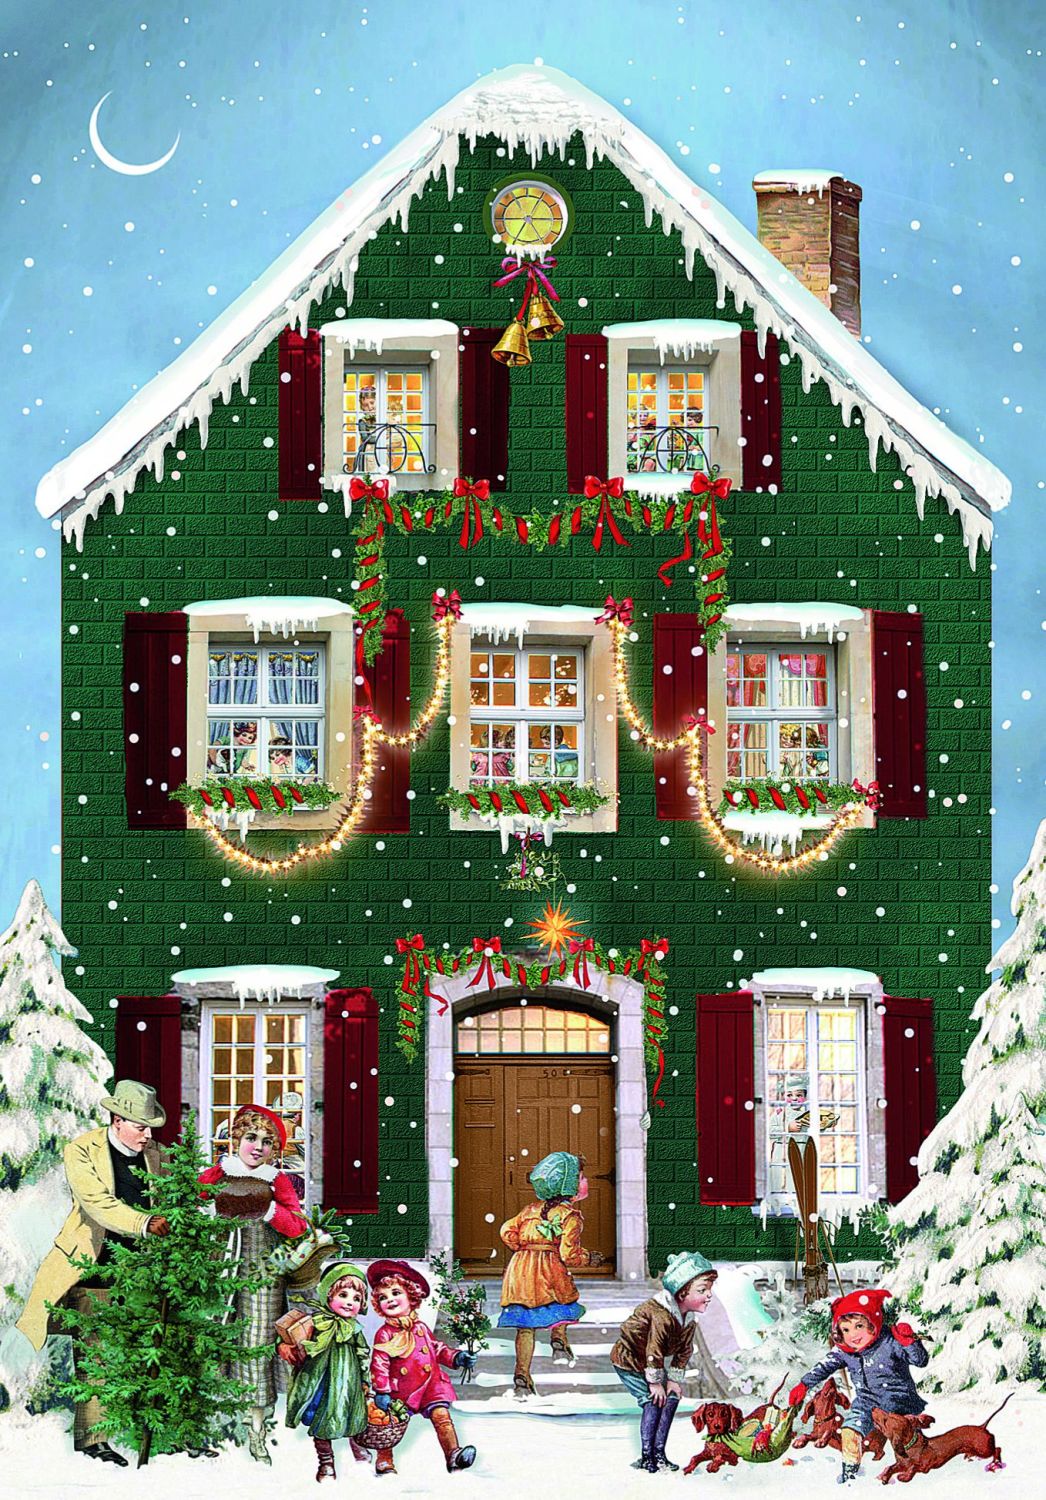 Mini Victorian  house advent calendar Christmas Card